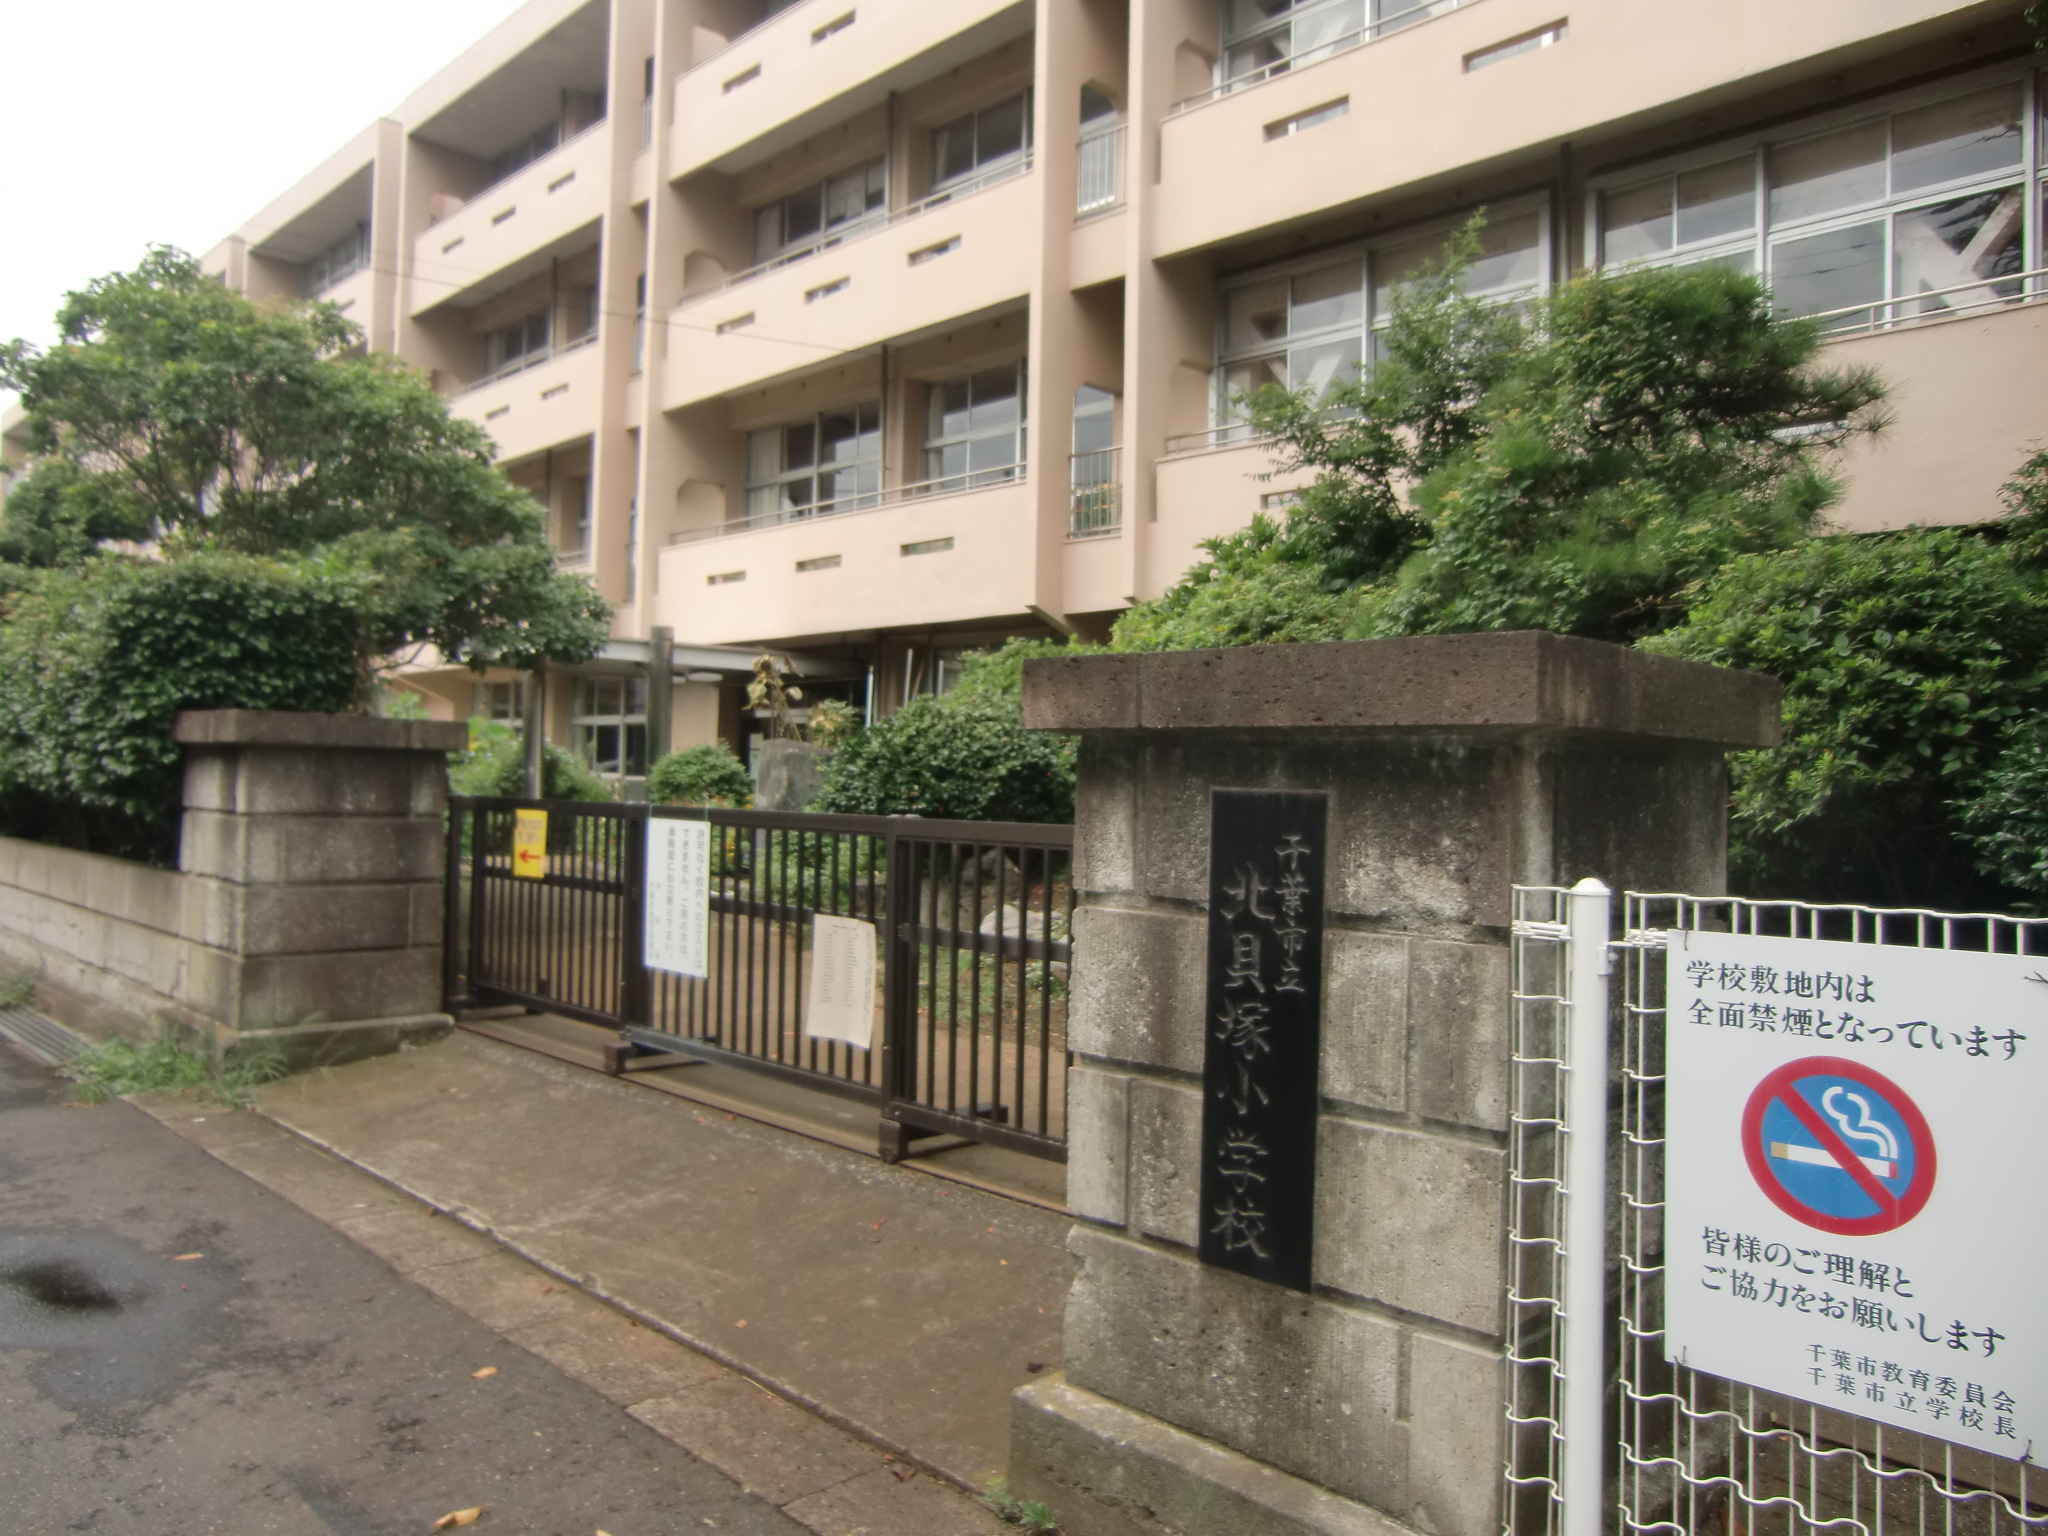 Primary school. 637m to Chiba City Tatsukita Kaizuka elementary school (elementary school)